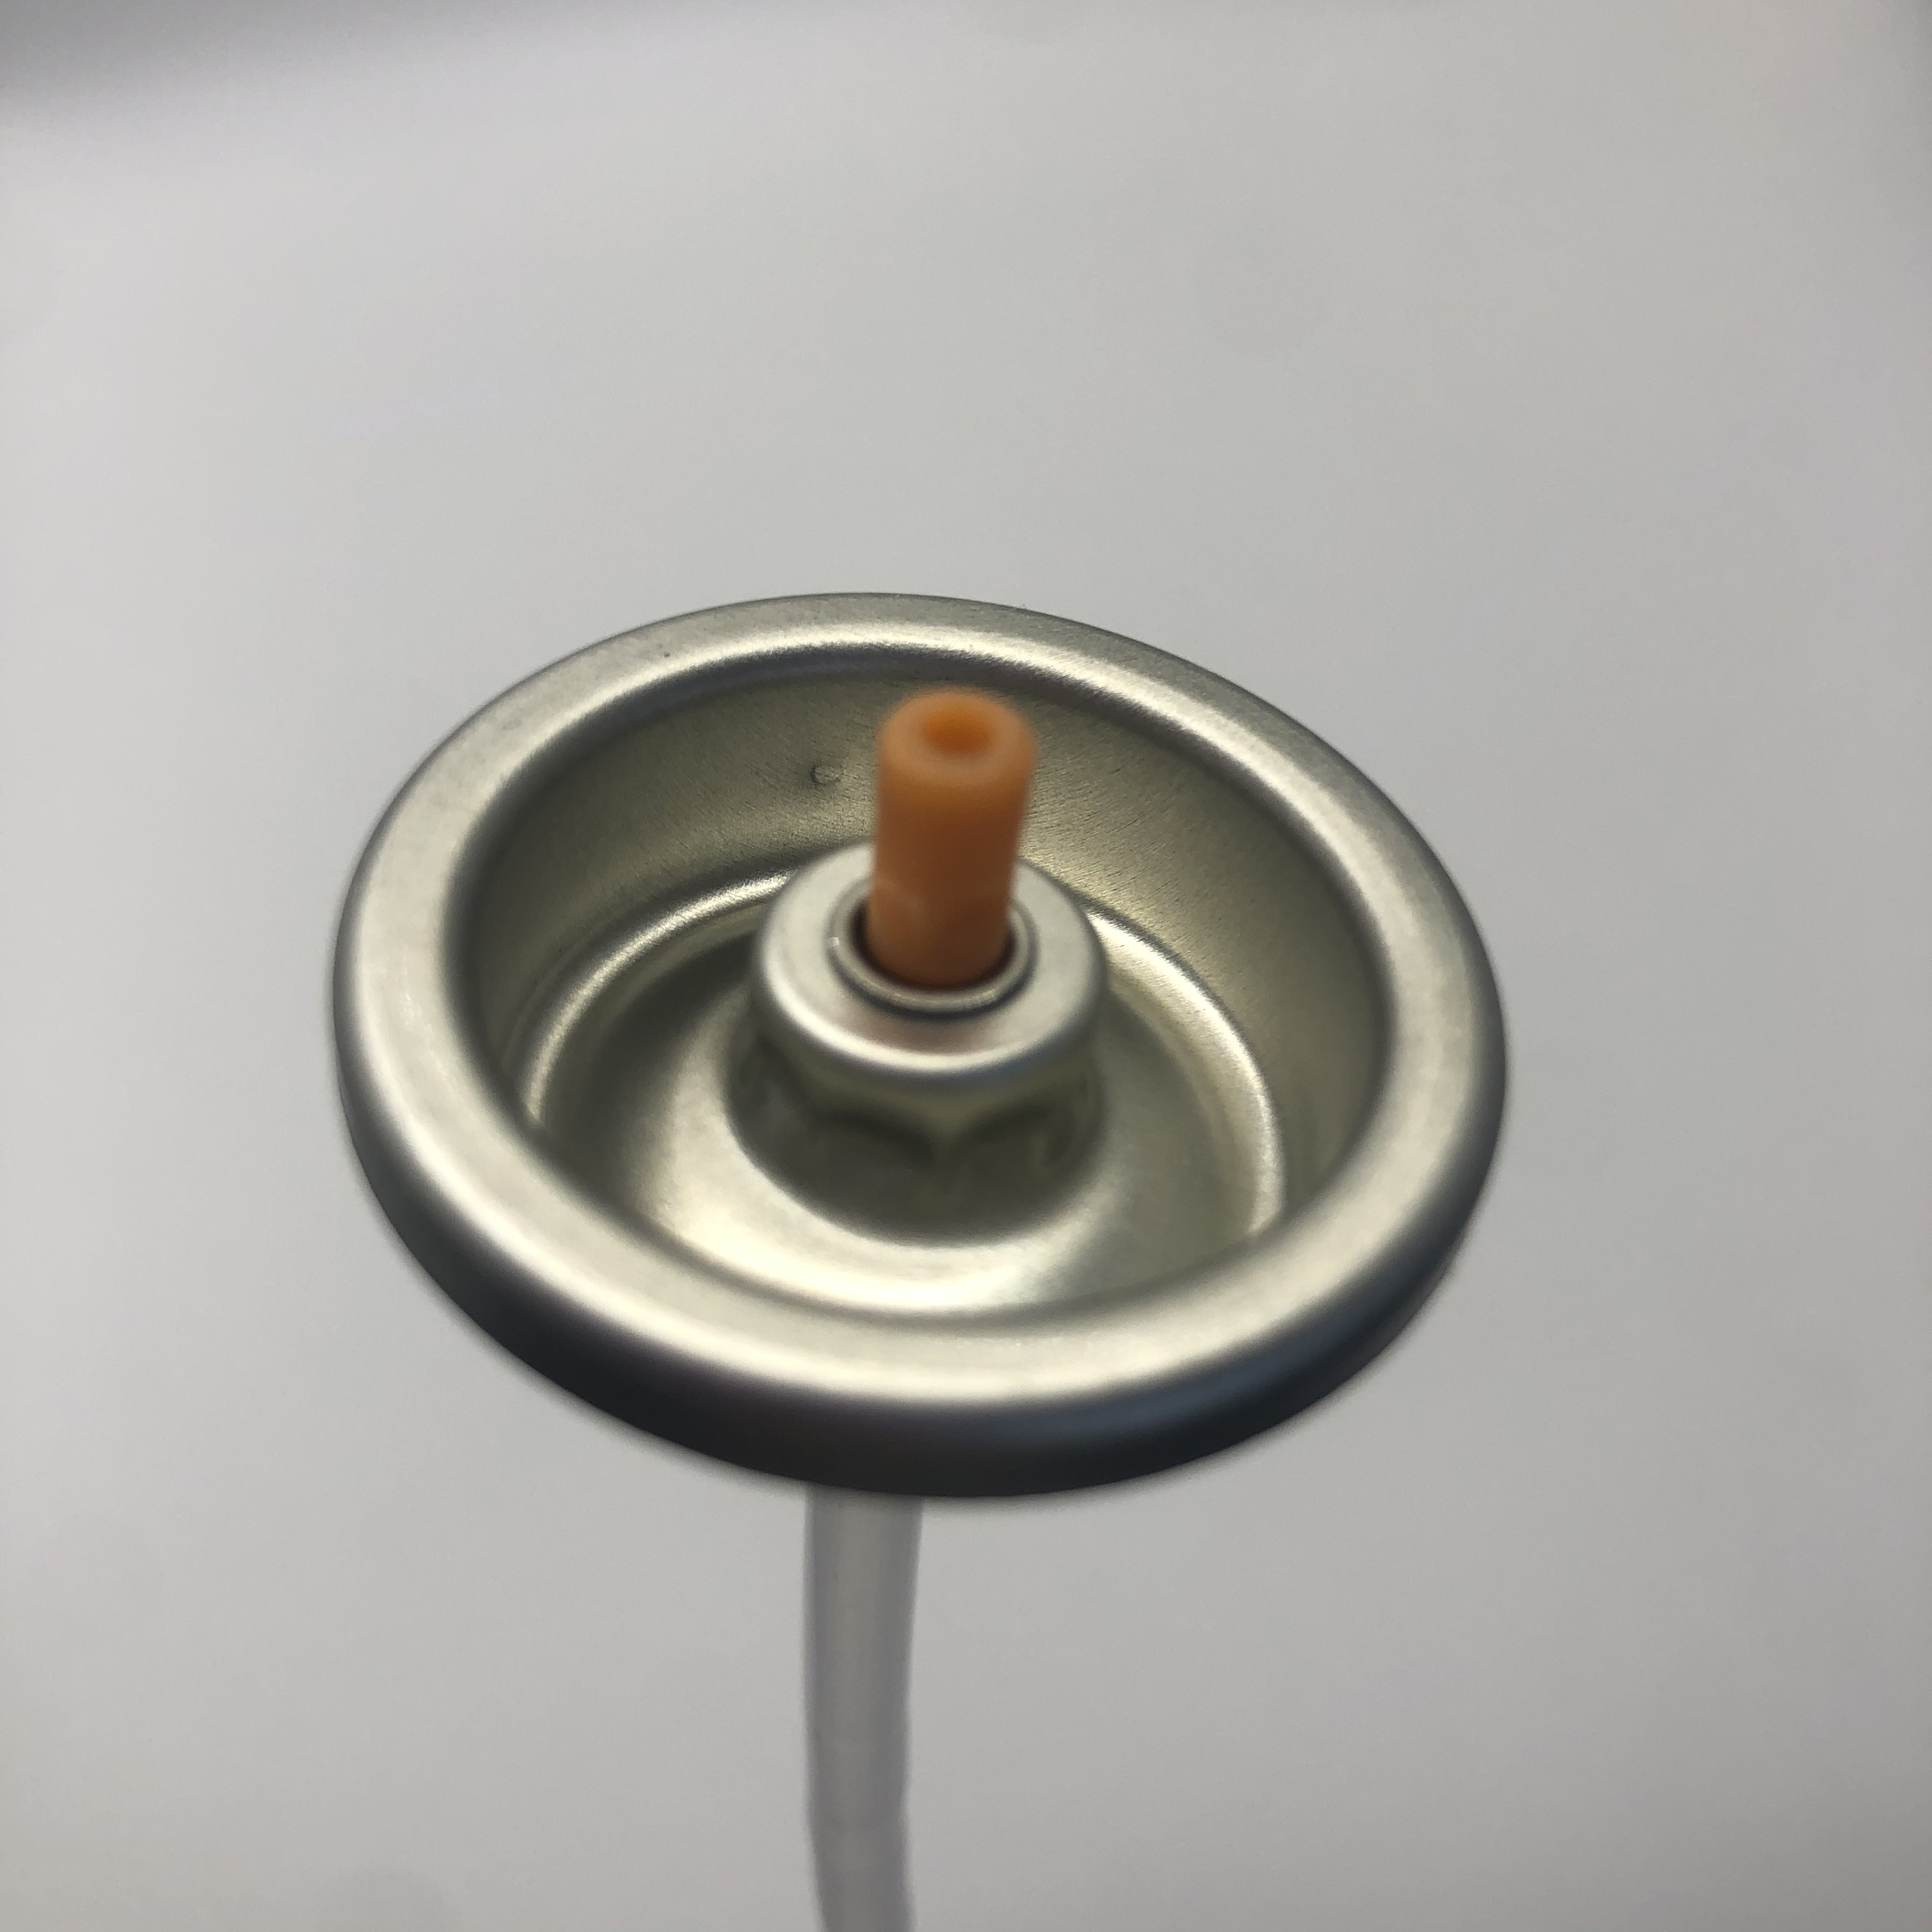 Válvula de pulverización de pintura de precisión para trabajo de detalle fino Válvula de acero inoxidable con caudal ajustable y sellos de teflón